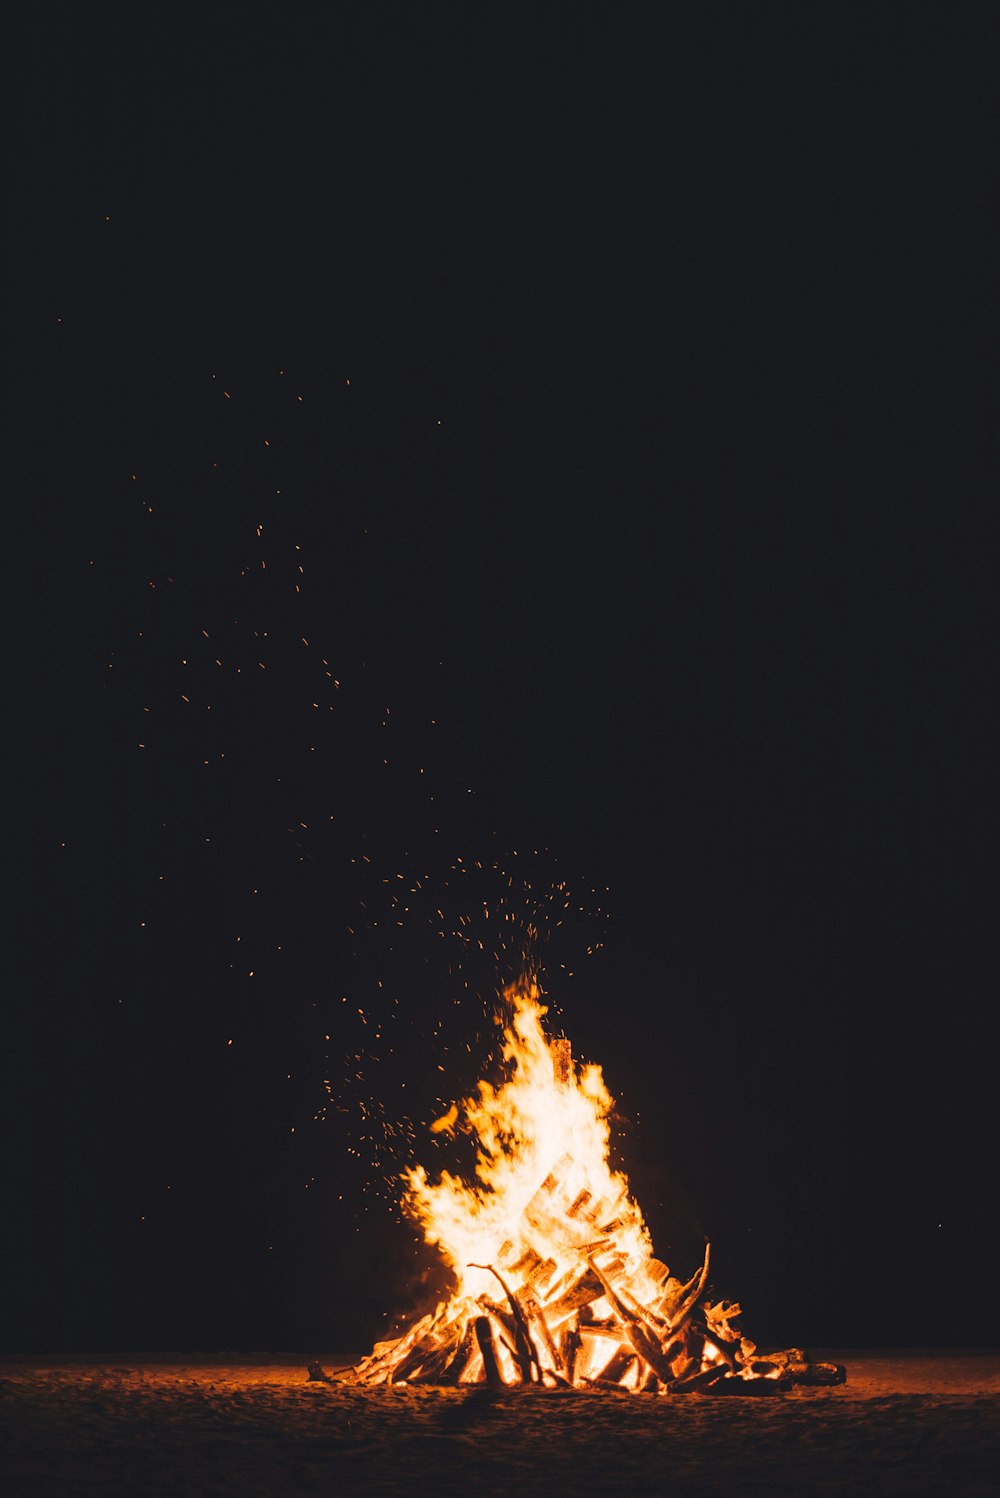 Fotografía de una fogata ardiendo